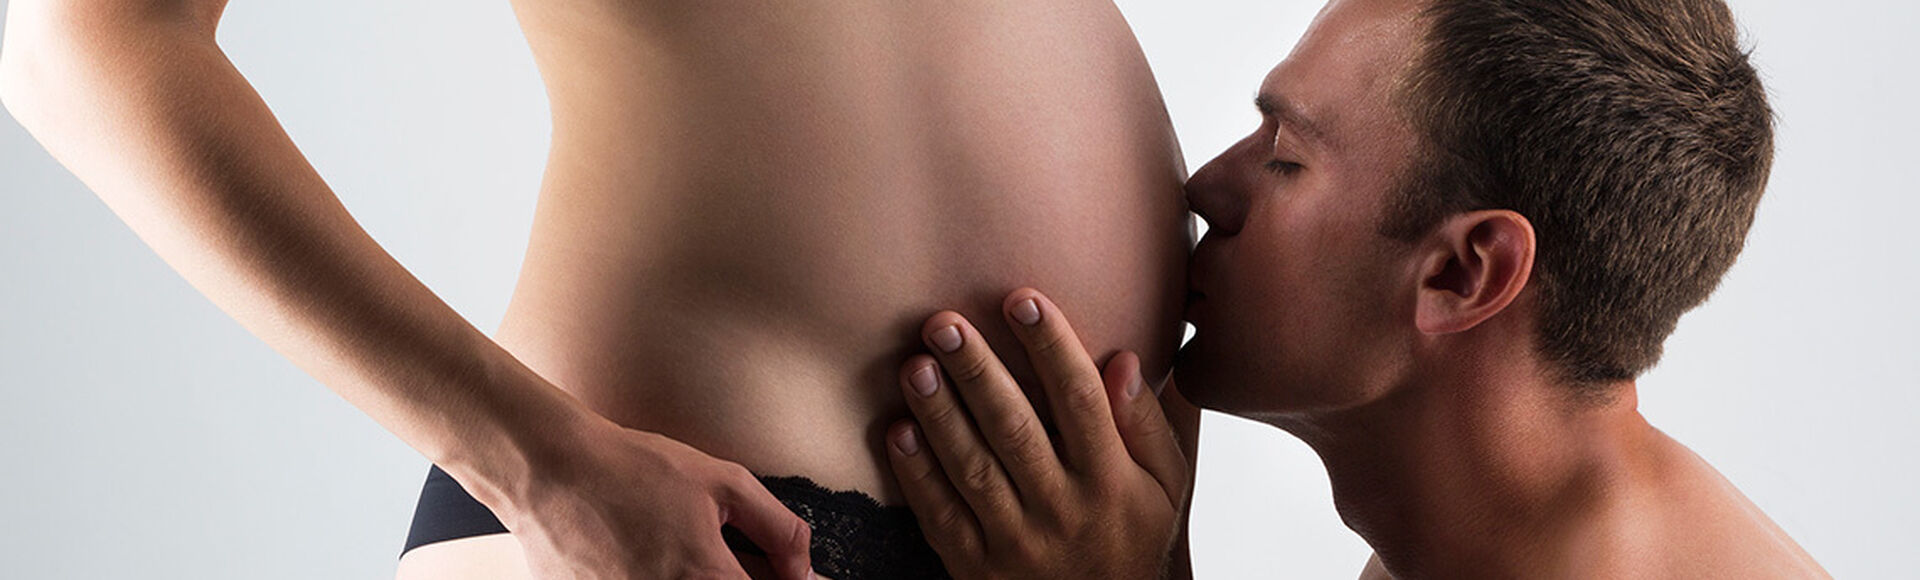 Cuantos meses son en la semana 30 de embarazo  | by Huggies Argentina